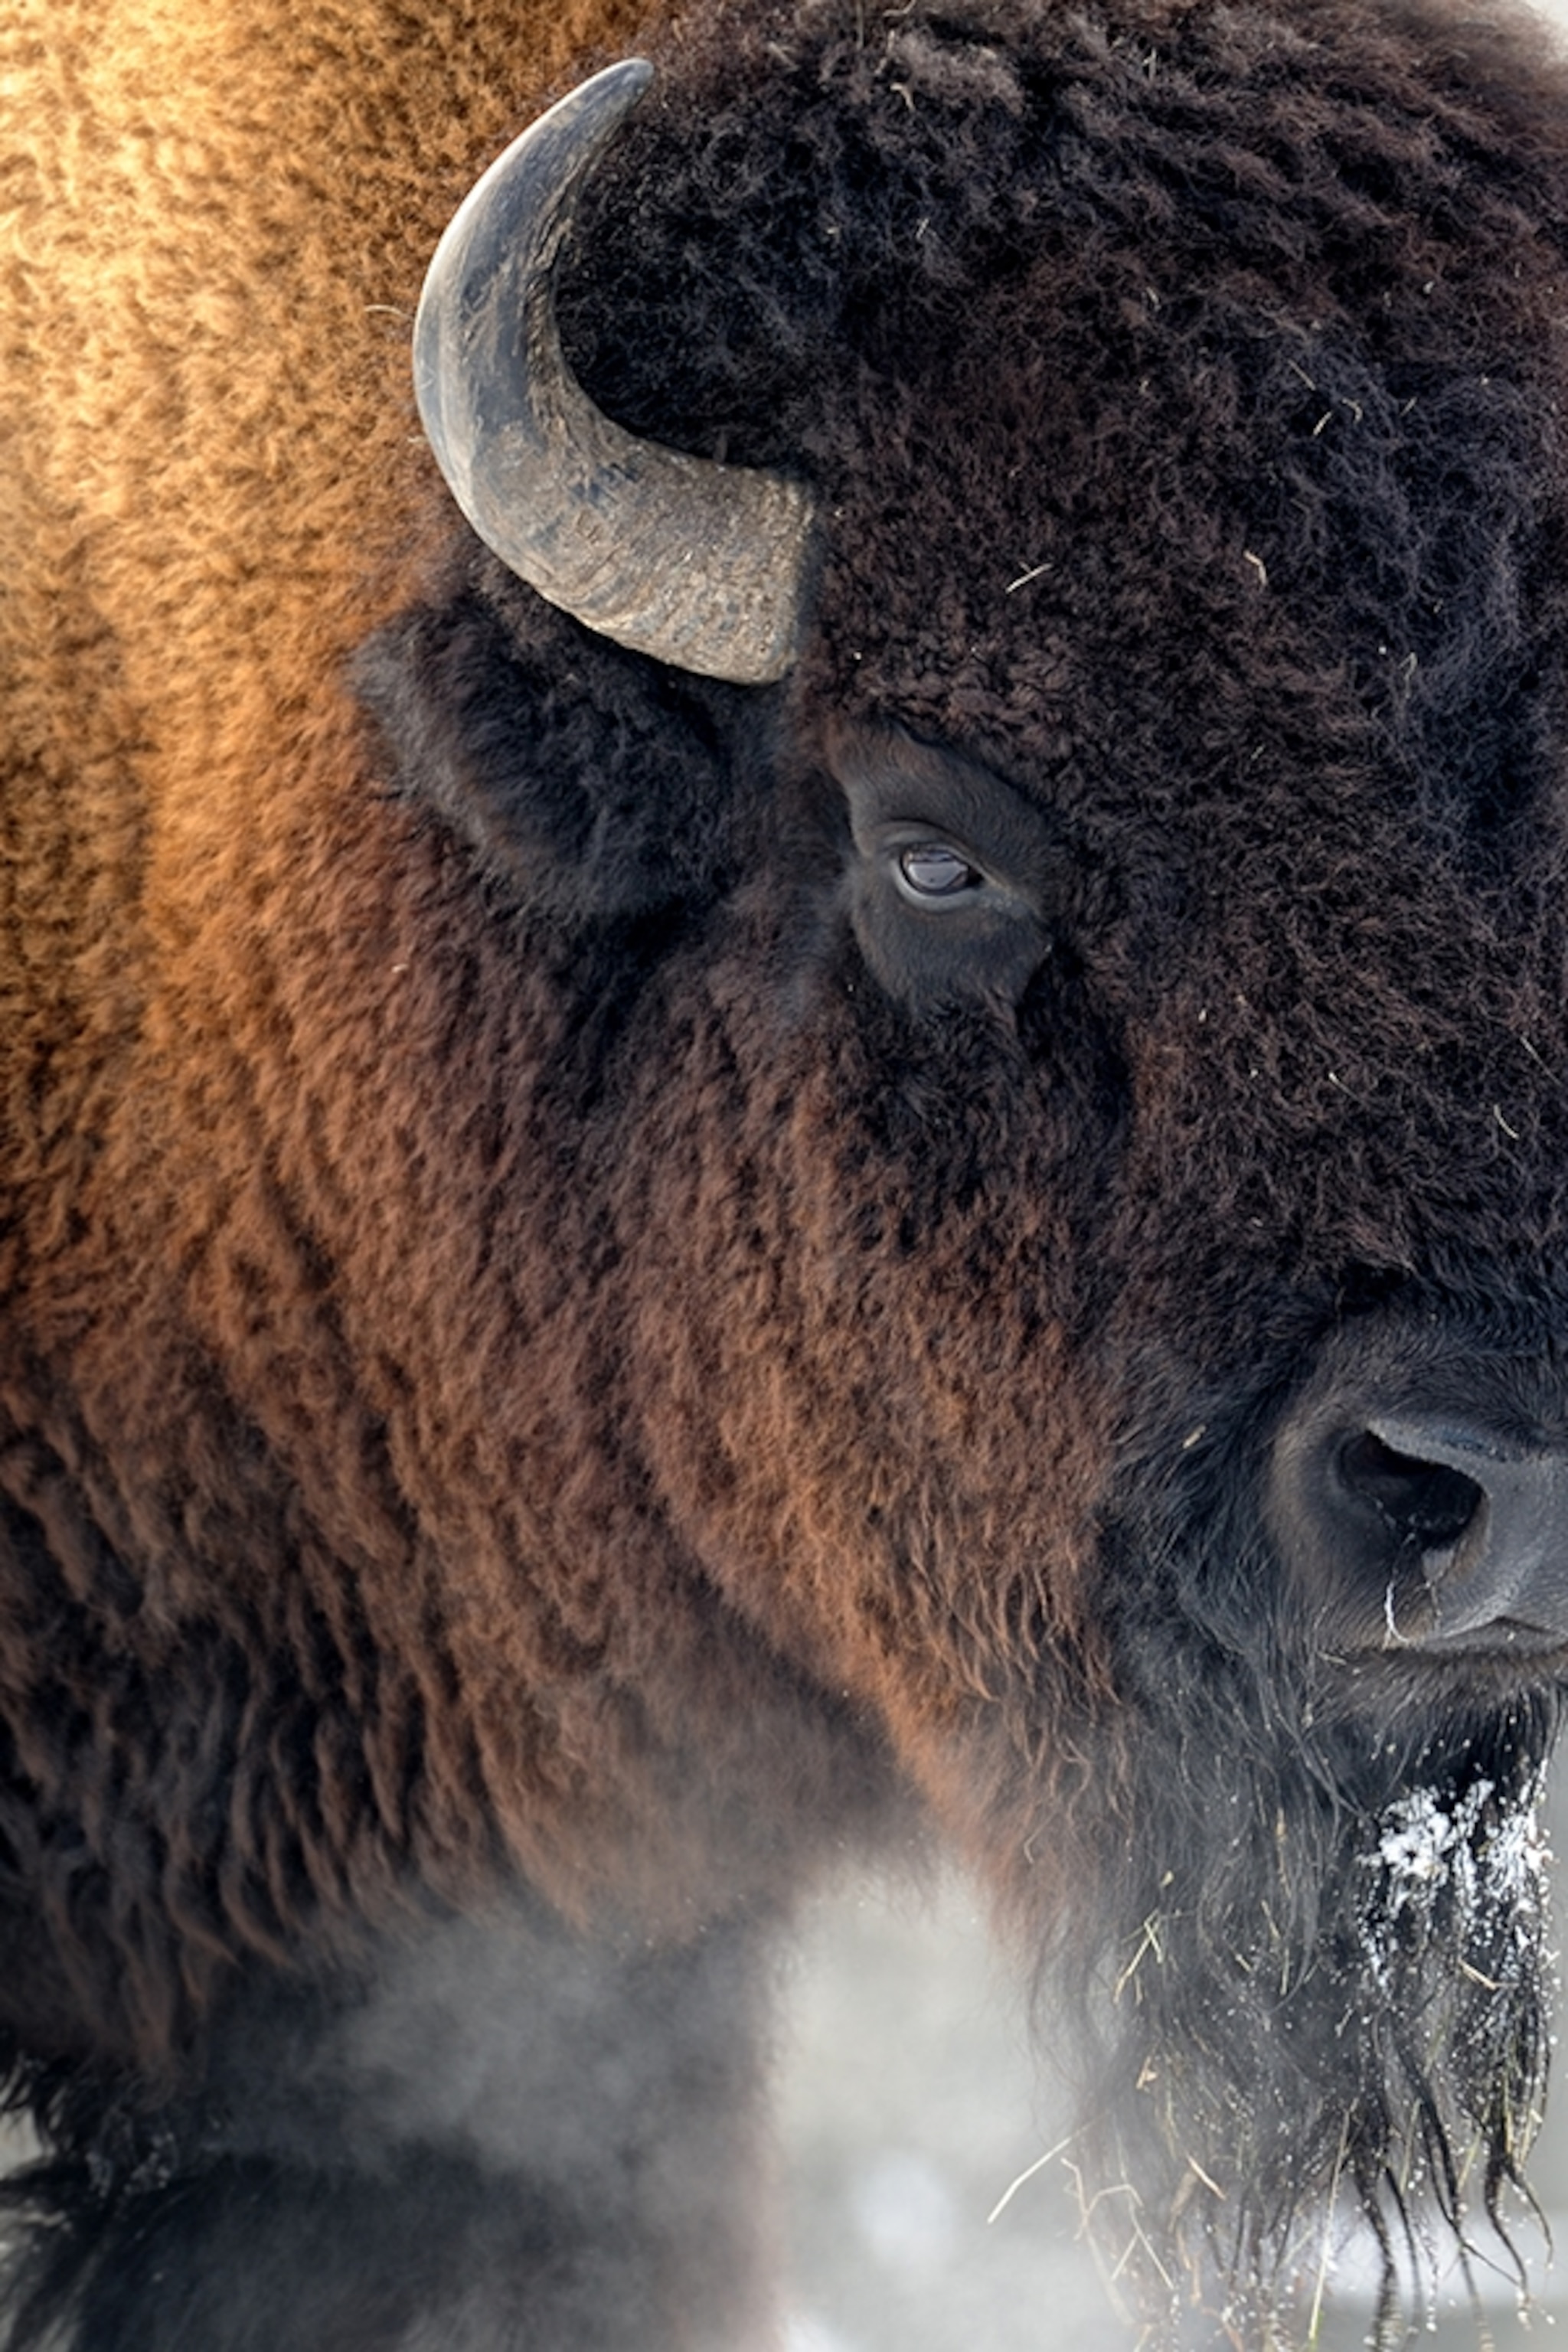 bison-closeup-head_2x3.jpg